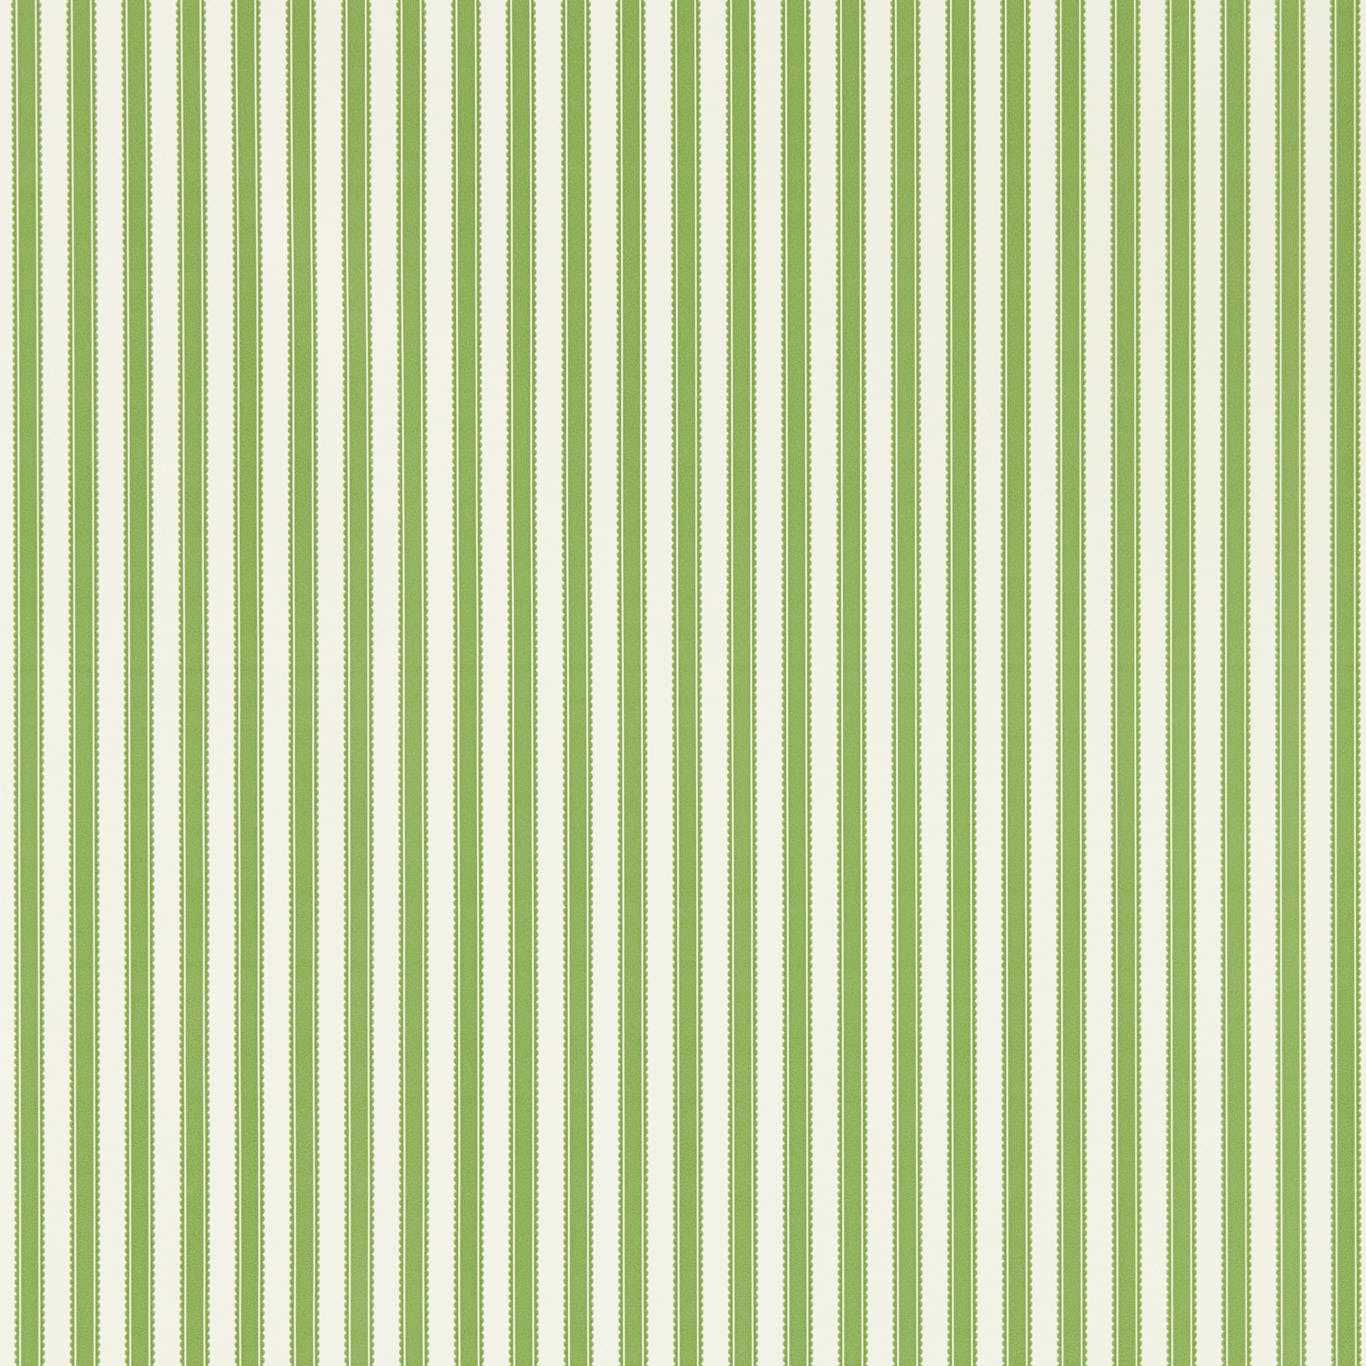 Pinetum Stripe Sap Green Wallpaper DABW217255 by Sanderson